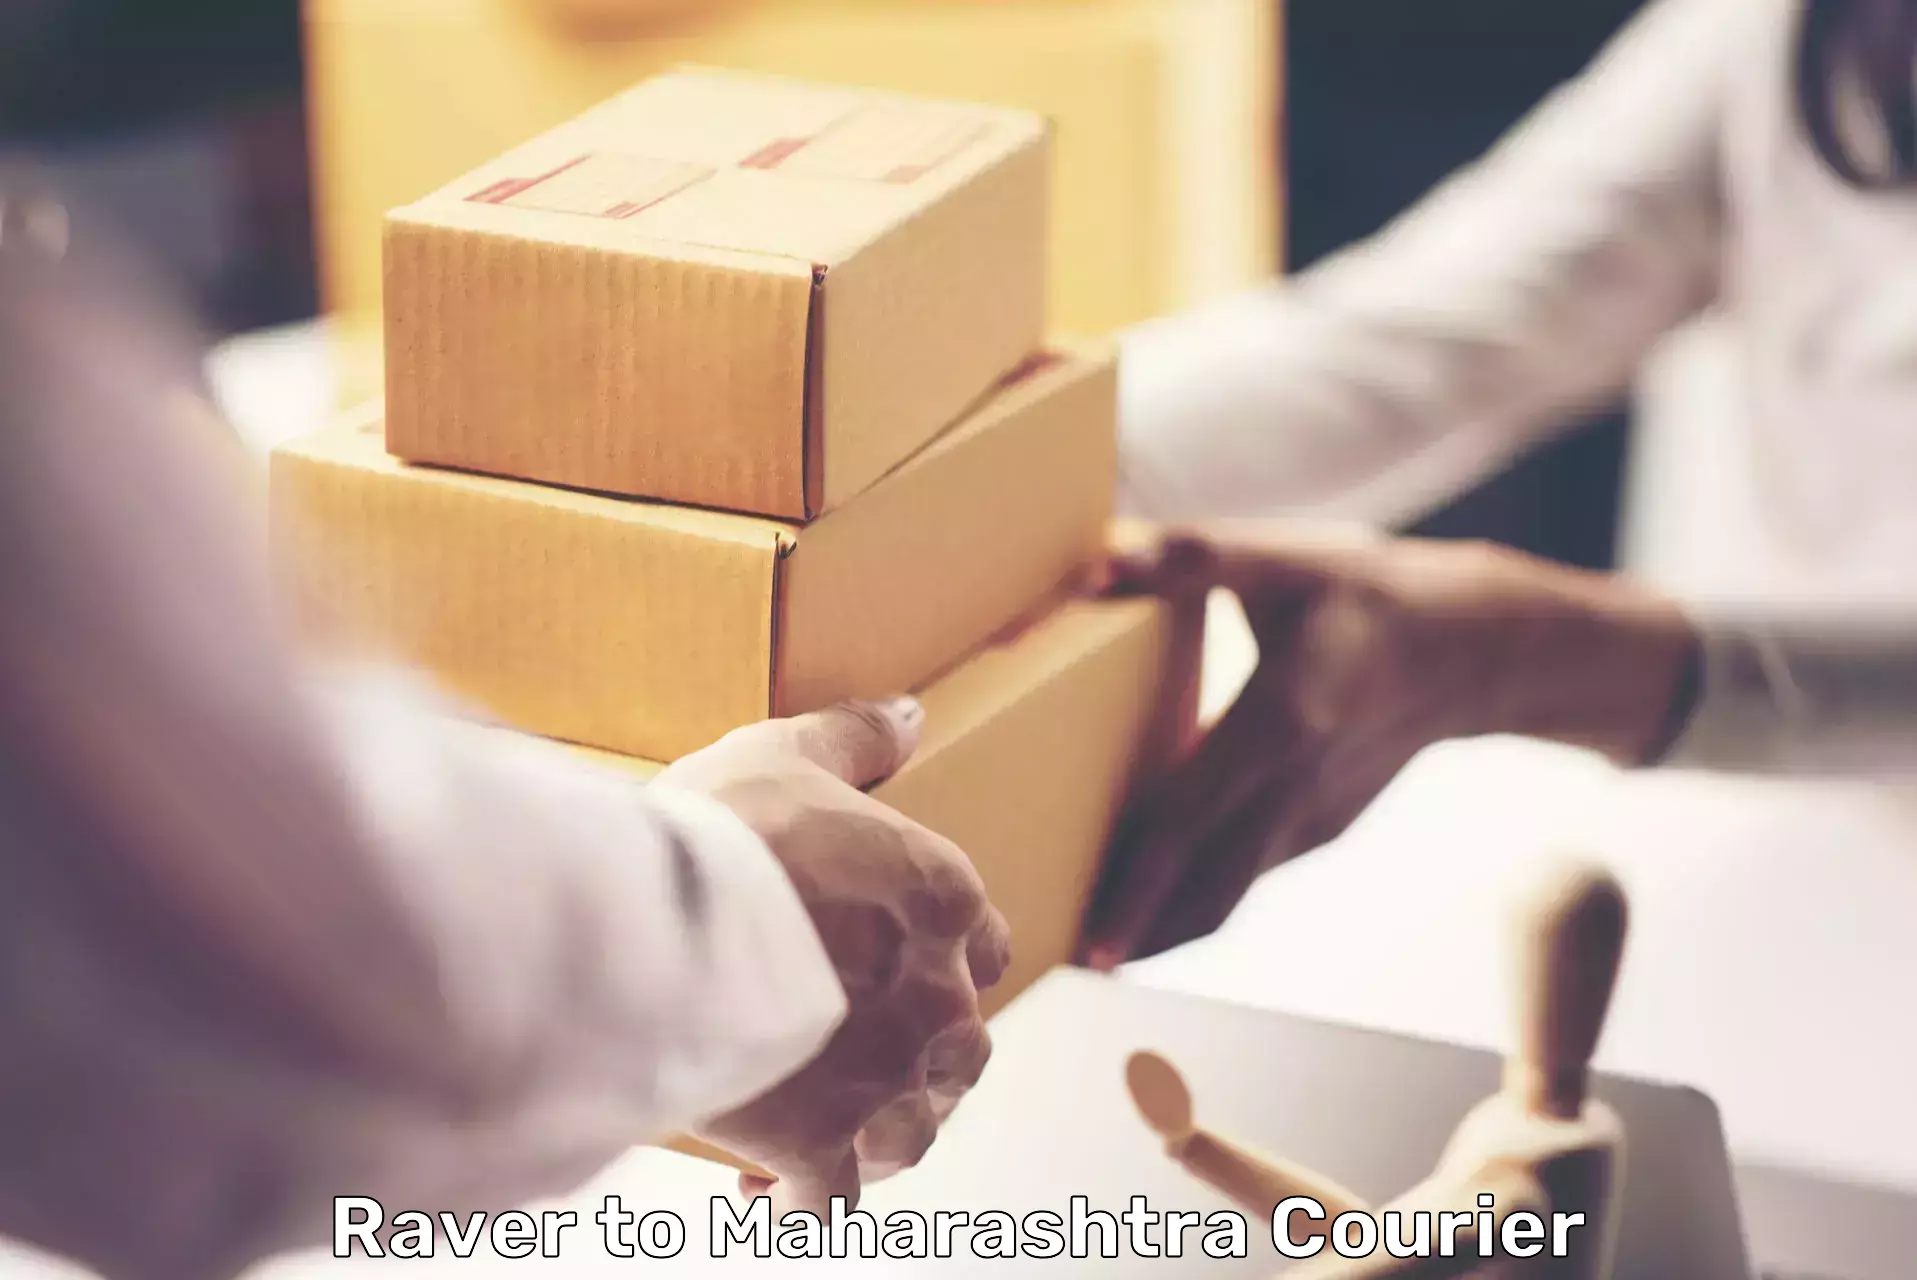 Bulk order courier in Raver to Maharashtra